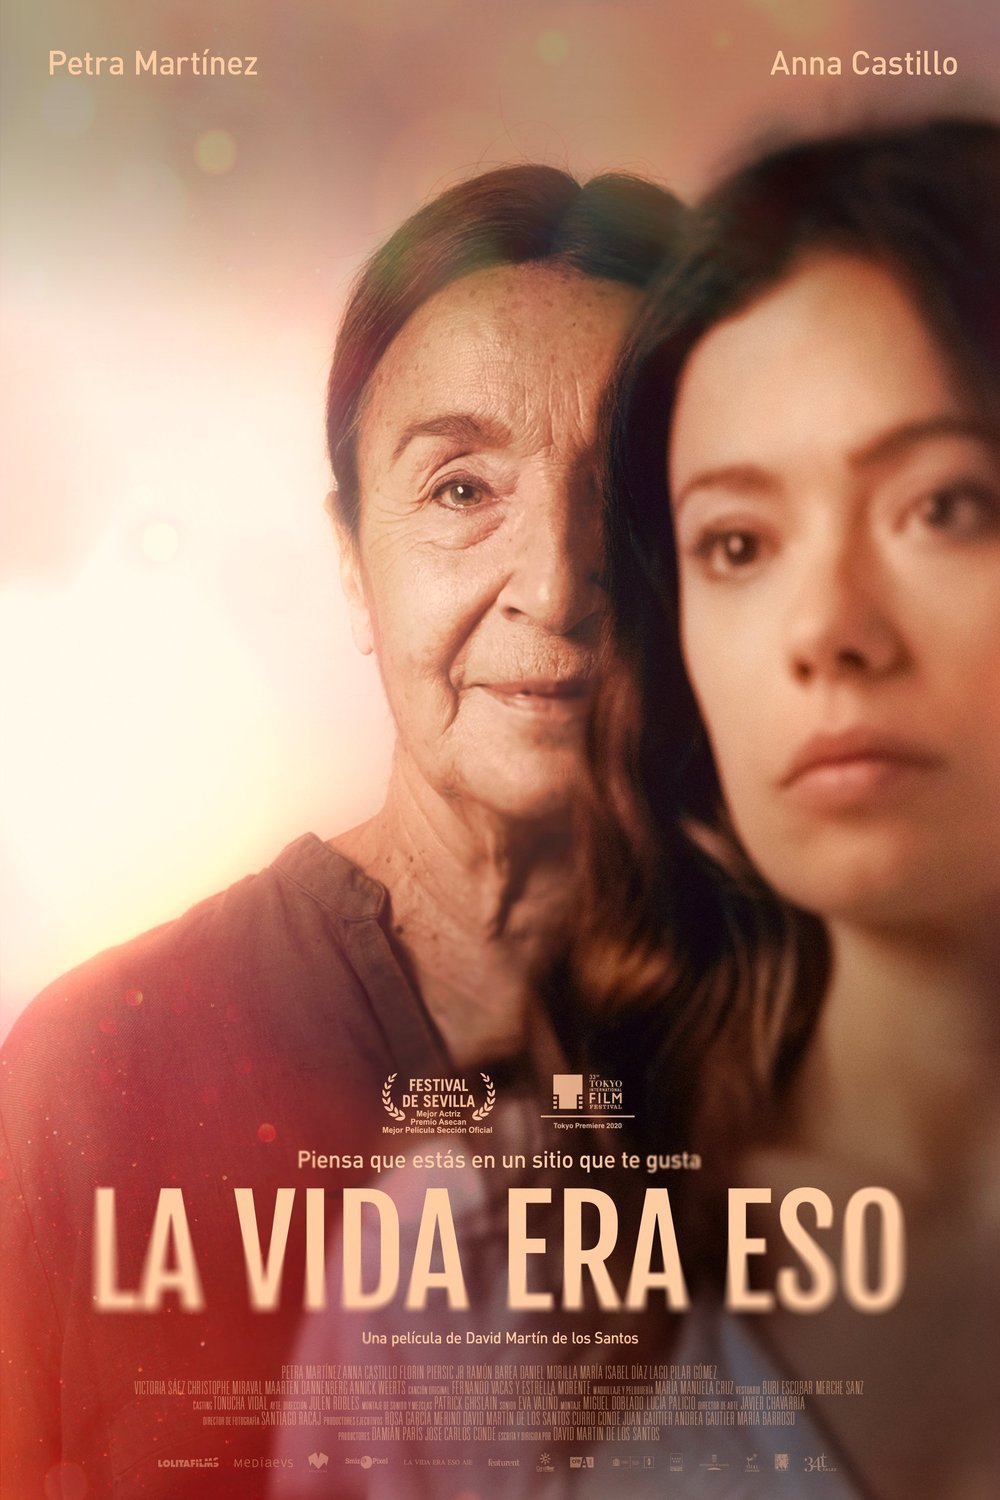 L'affiche originale du film La vida era eso en espagnol